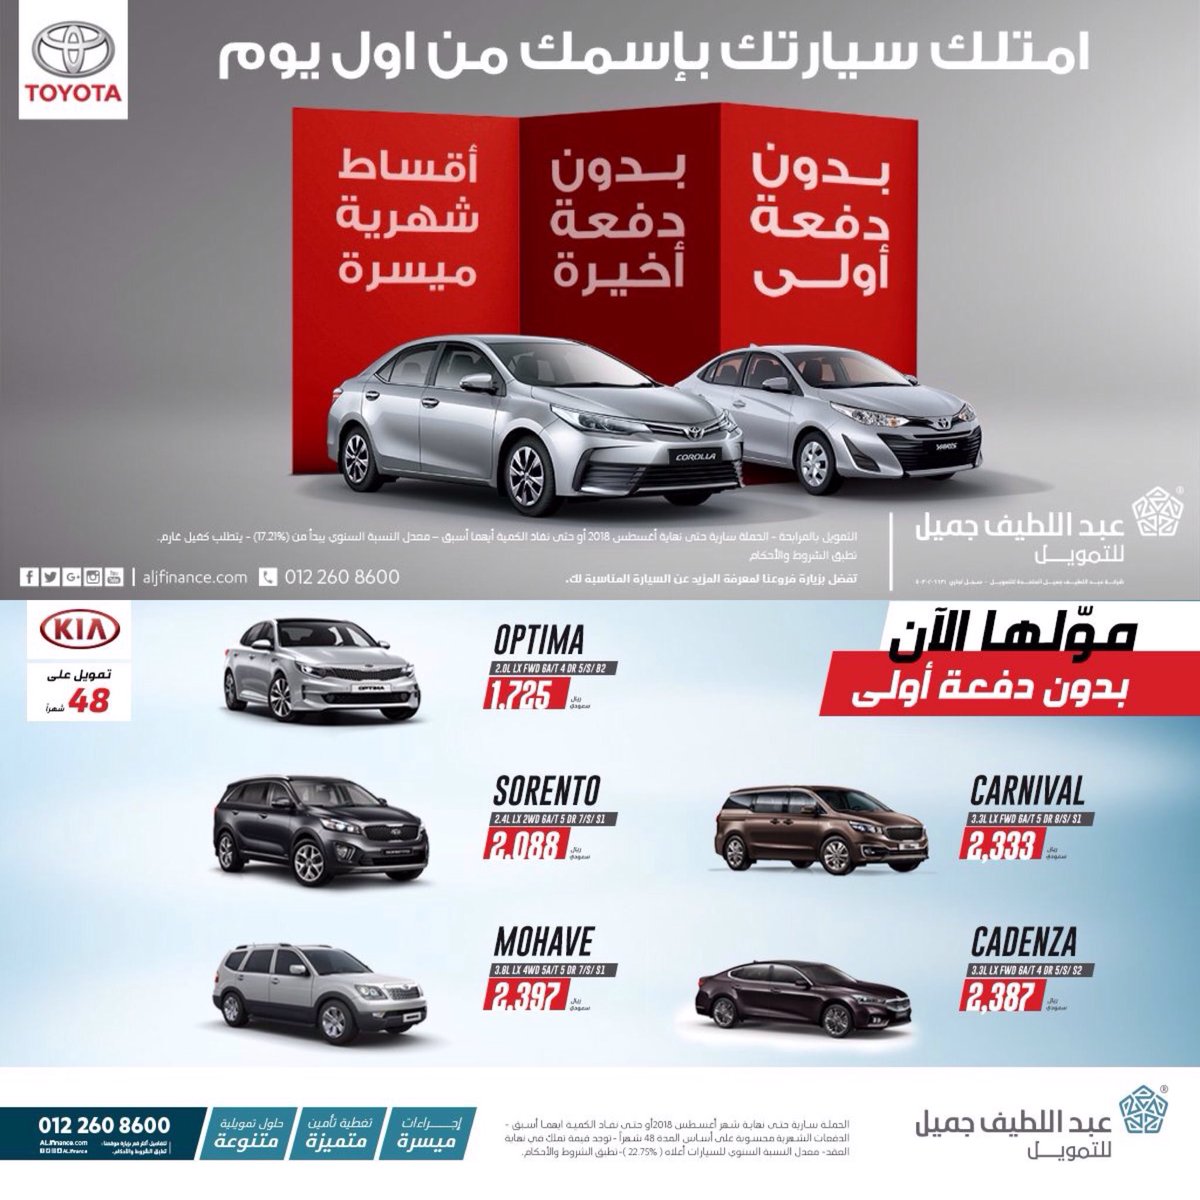 11755 4 سيارات 2019 في السعودية - احدث الماركات للسيارات في السعودية رفيعة ديالى